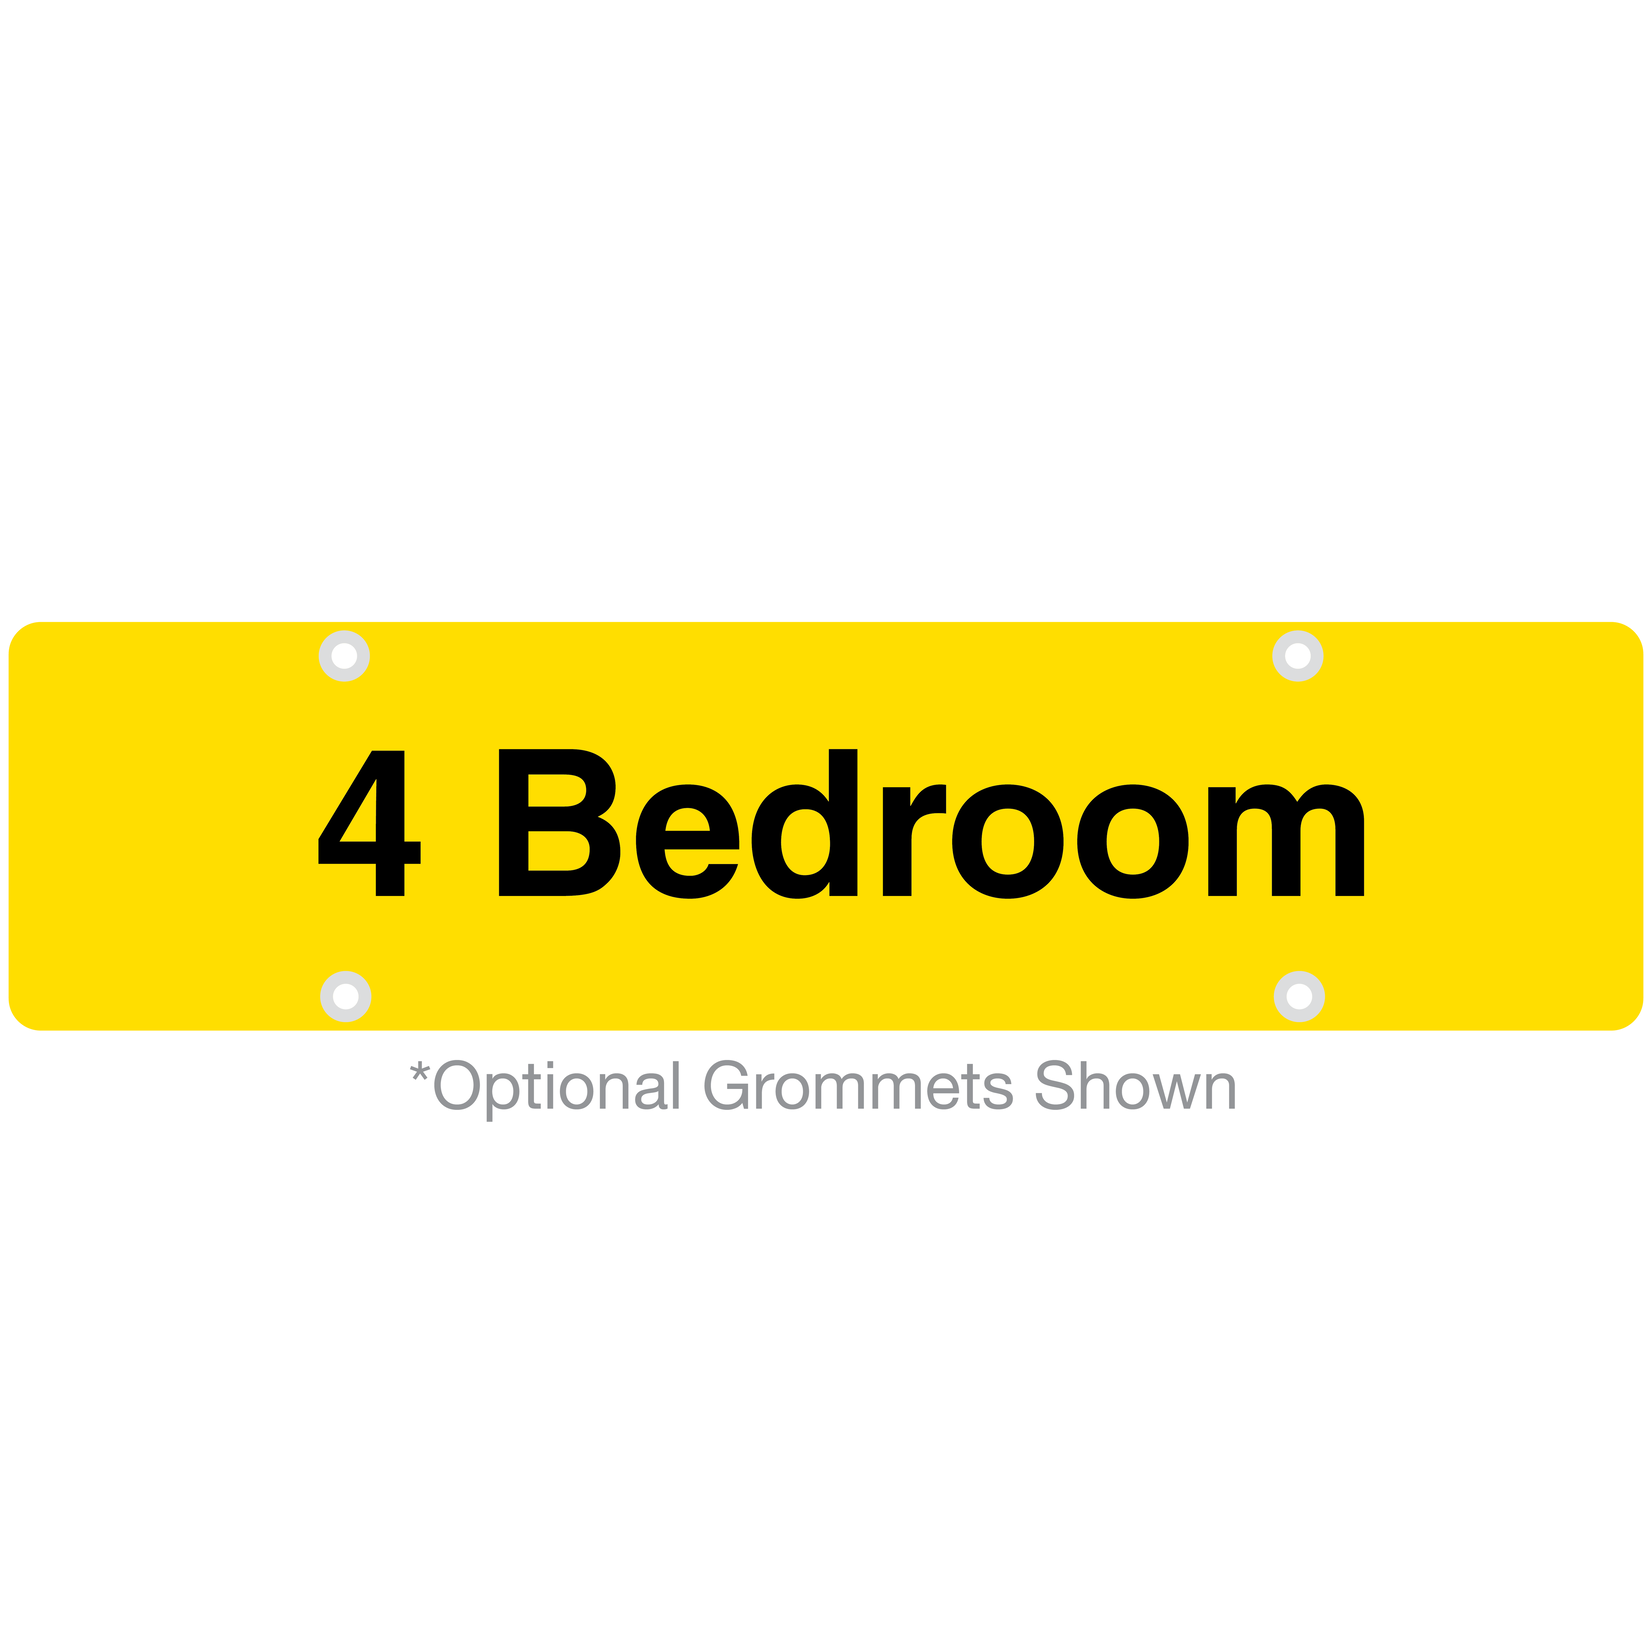 4 Bedroom RIDER